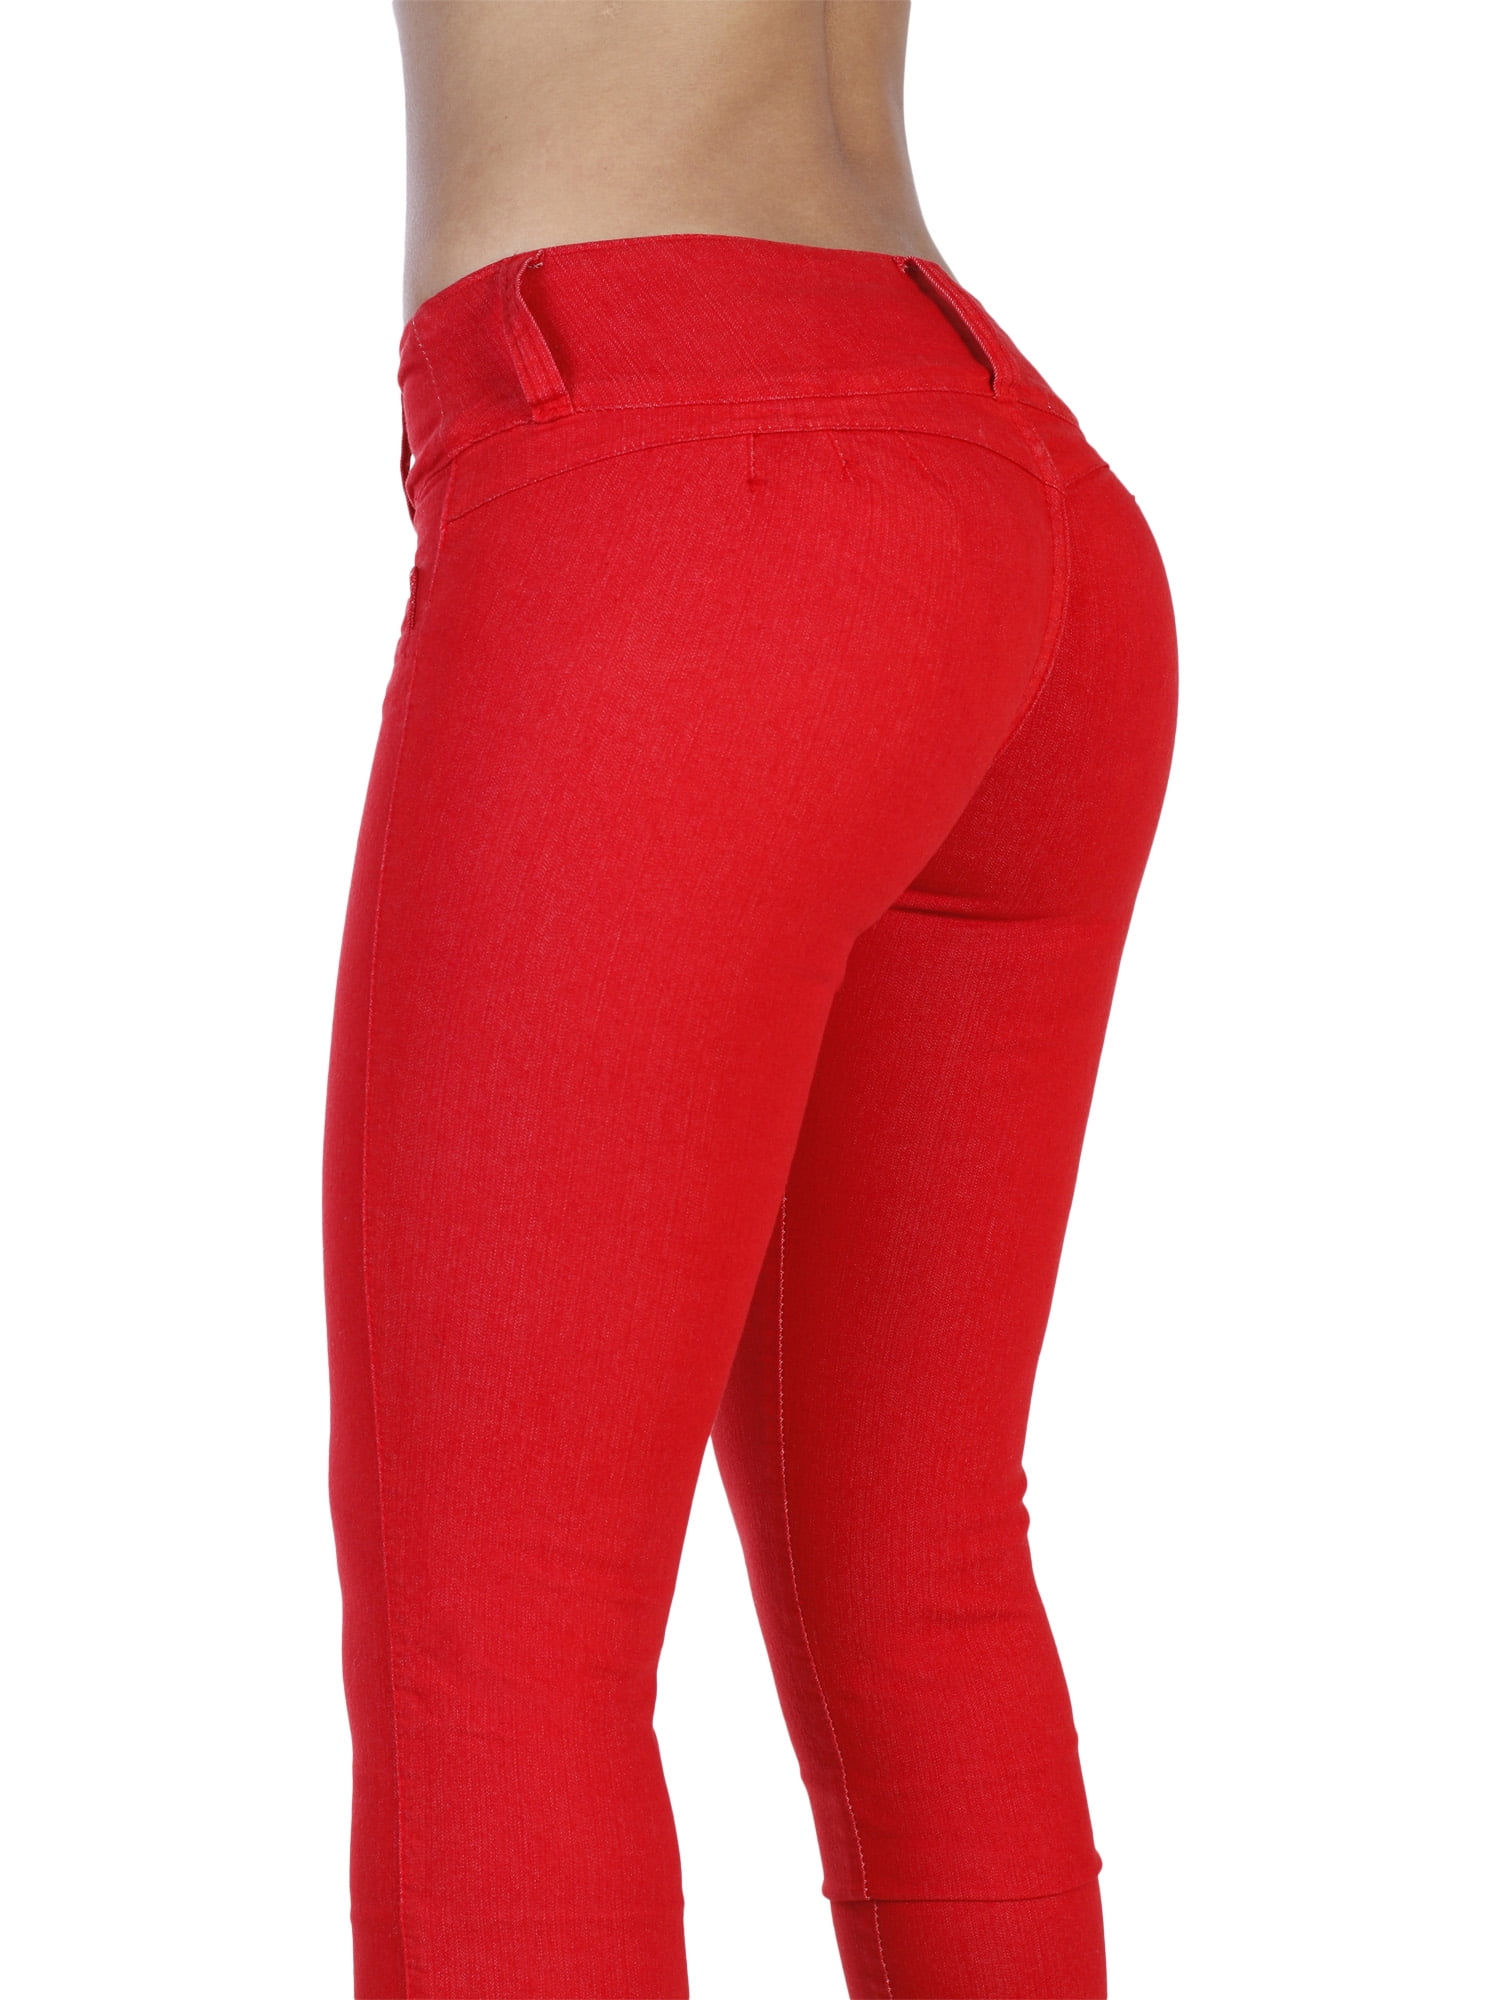 Red Butt Lifter Jeans Wonderfit 2080 - Wonderfitshapers